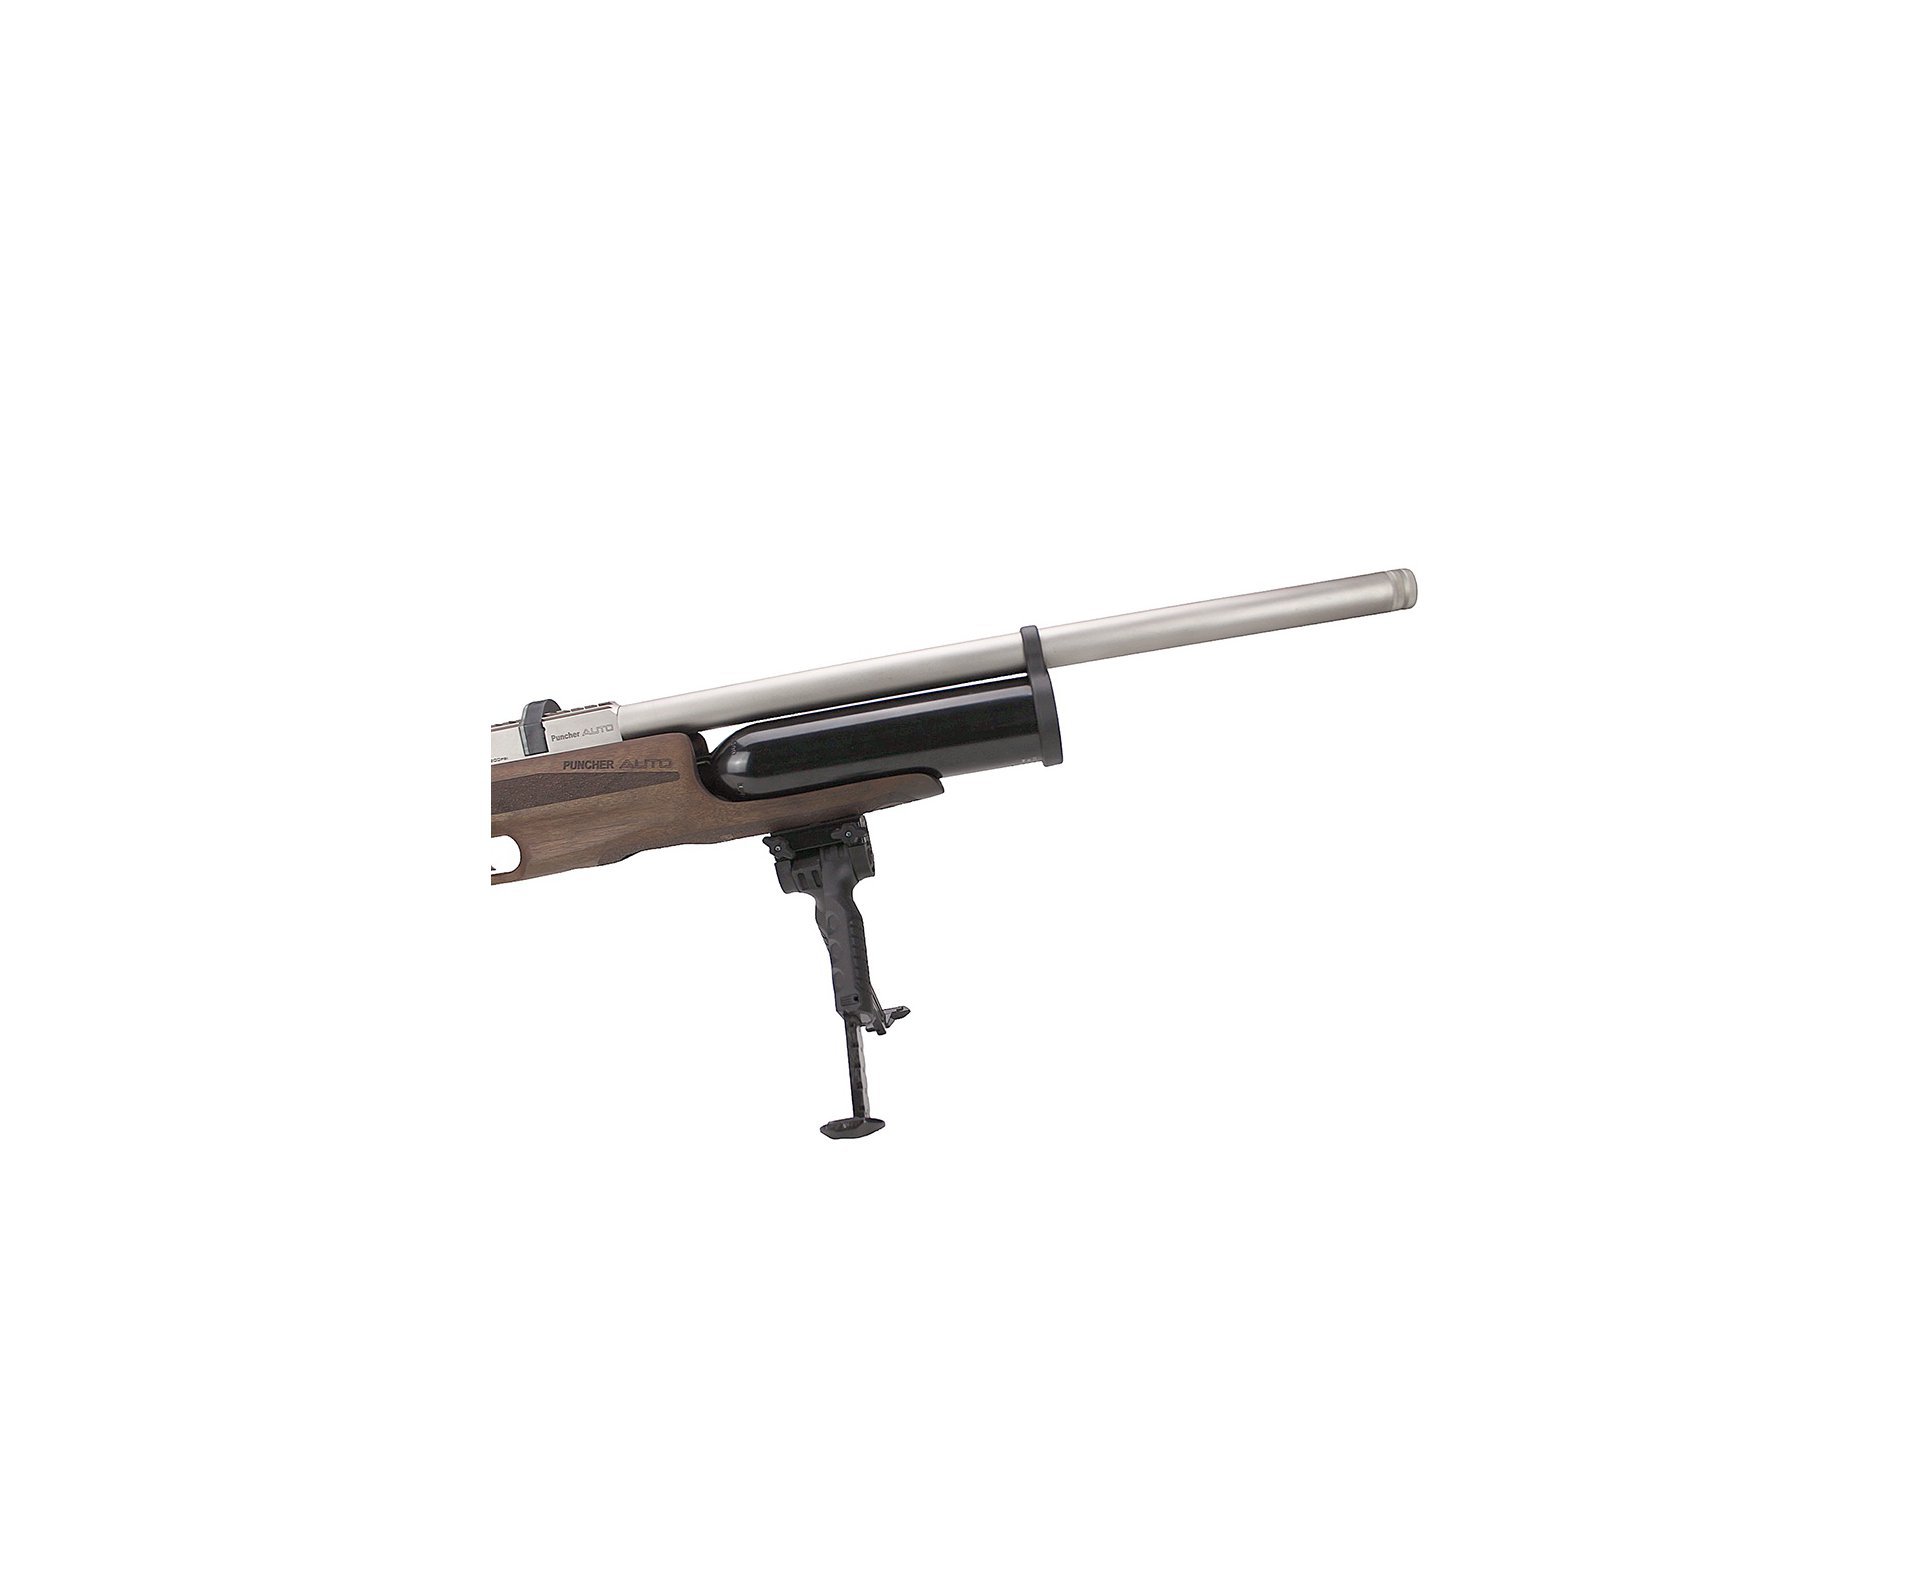 Artefato de Pressão PCP Puncher Auto Marine W 5.5 Kral Arms - FXR (OUTLET)